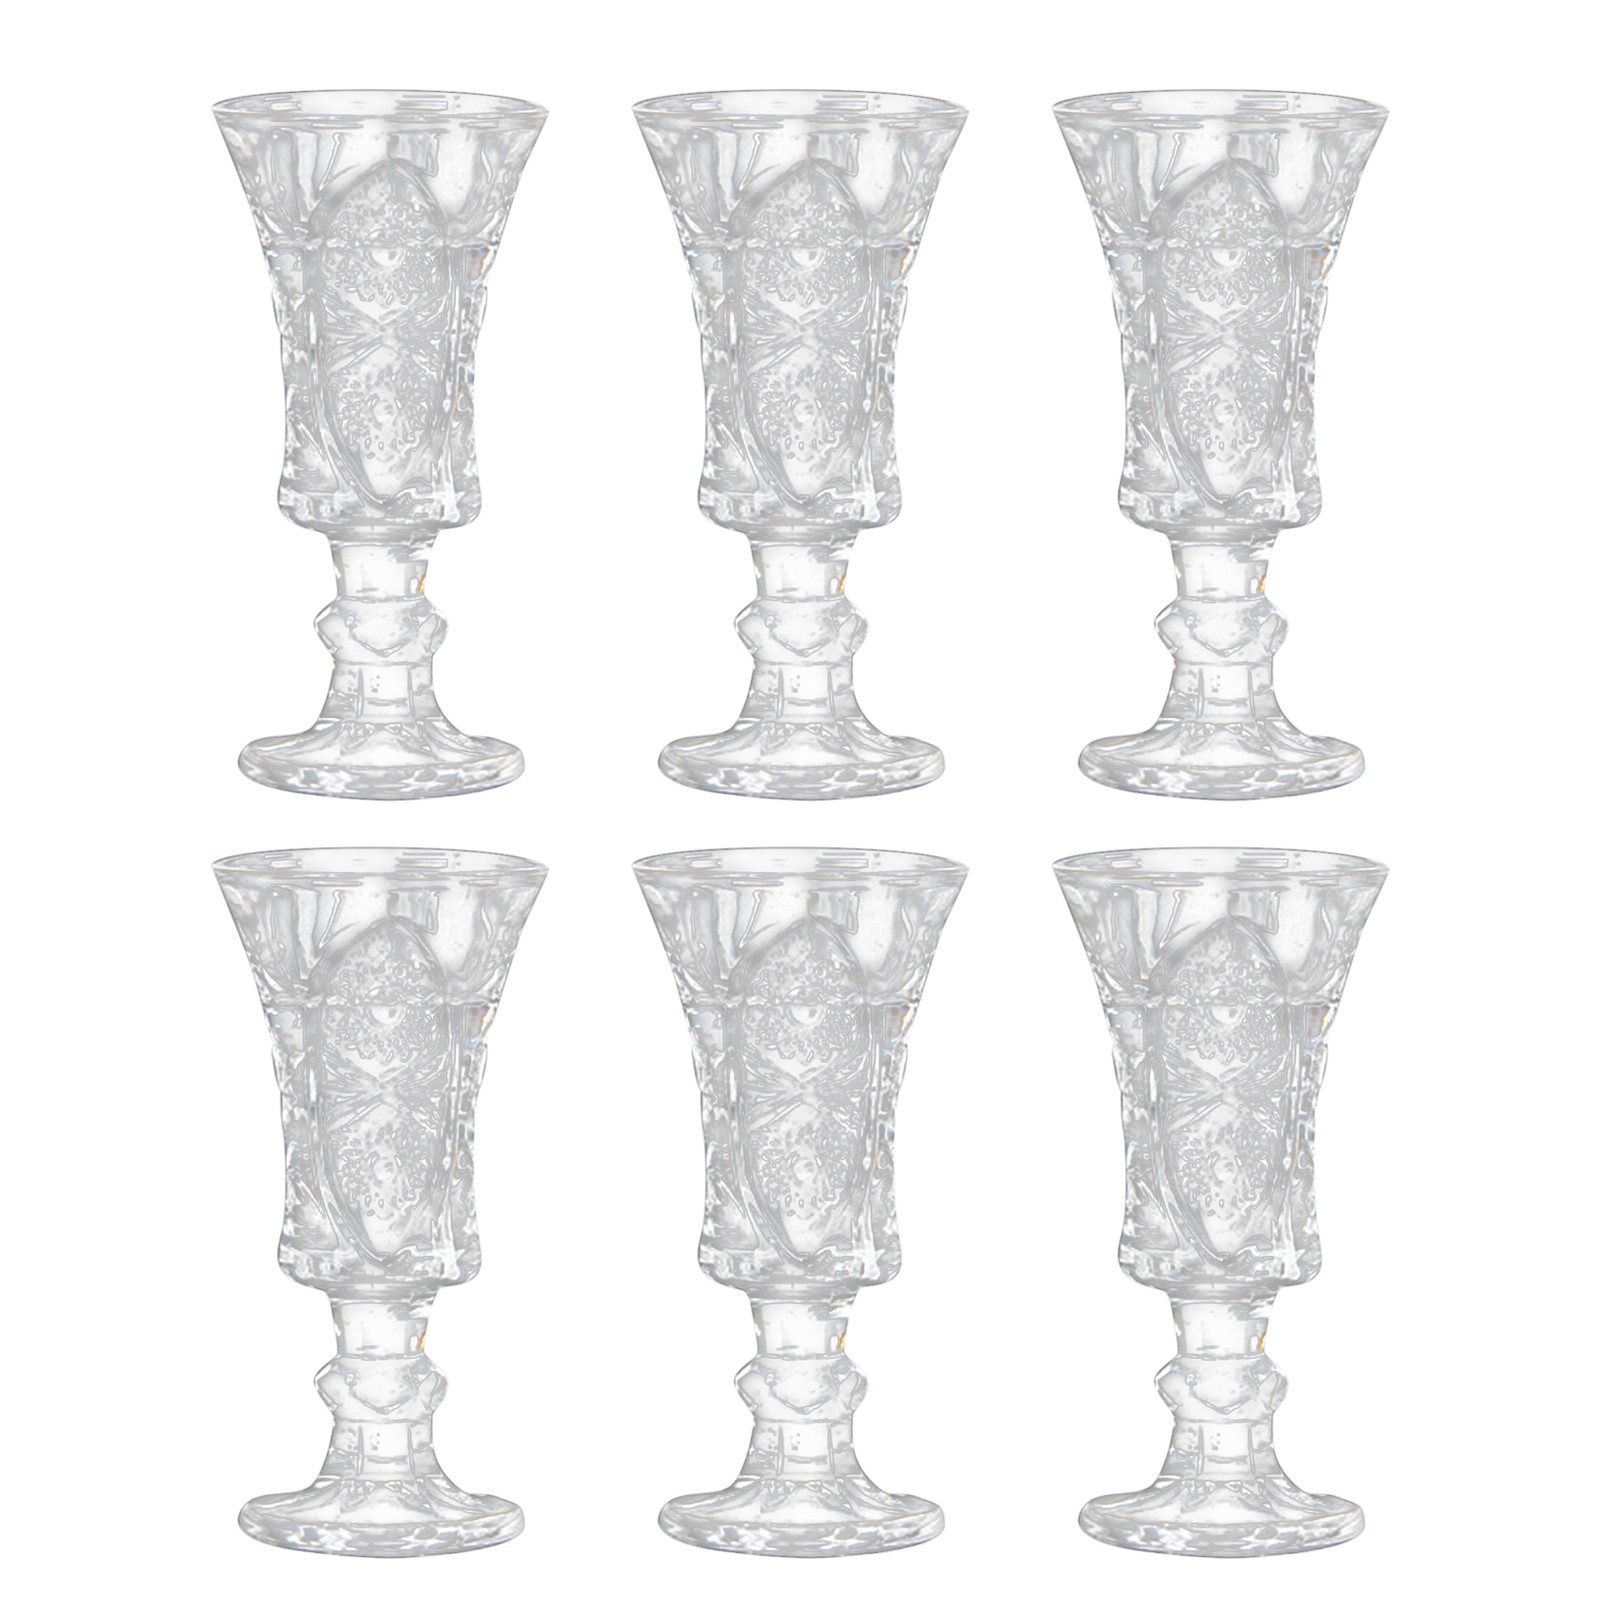 OKWISH Schnapsglas 6er Set Schnapsgläser Glas Shotgläser Kleine Likörgläser Weinglas, Glas, Kristallglas für den privaten Gebrauch die Gastronomie Bars Catering